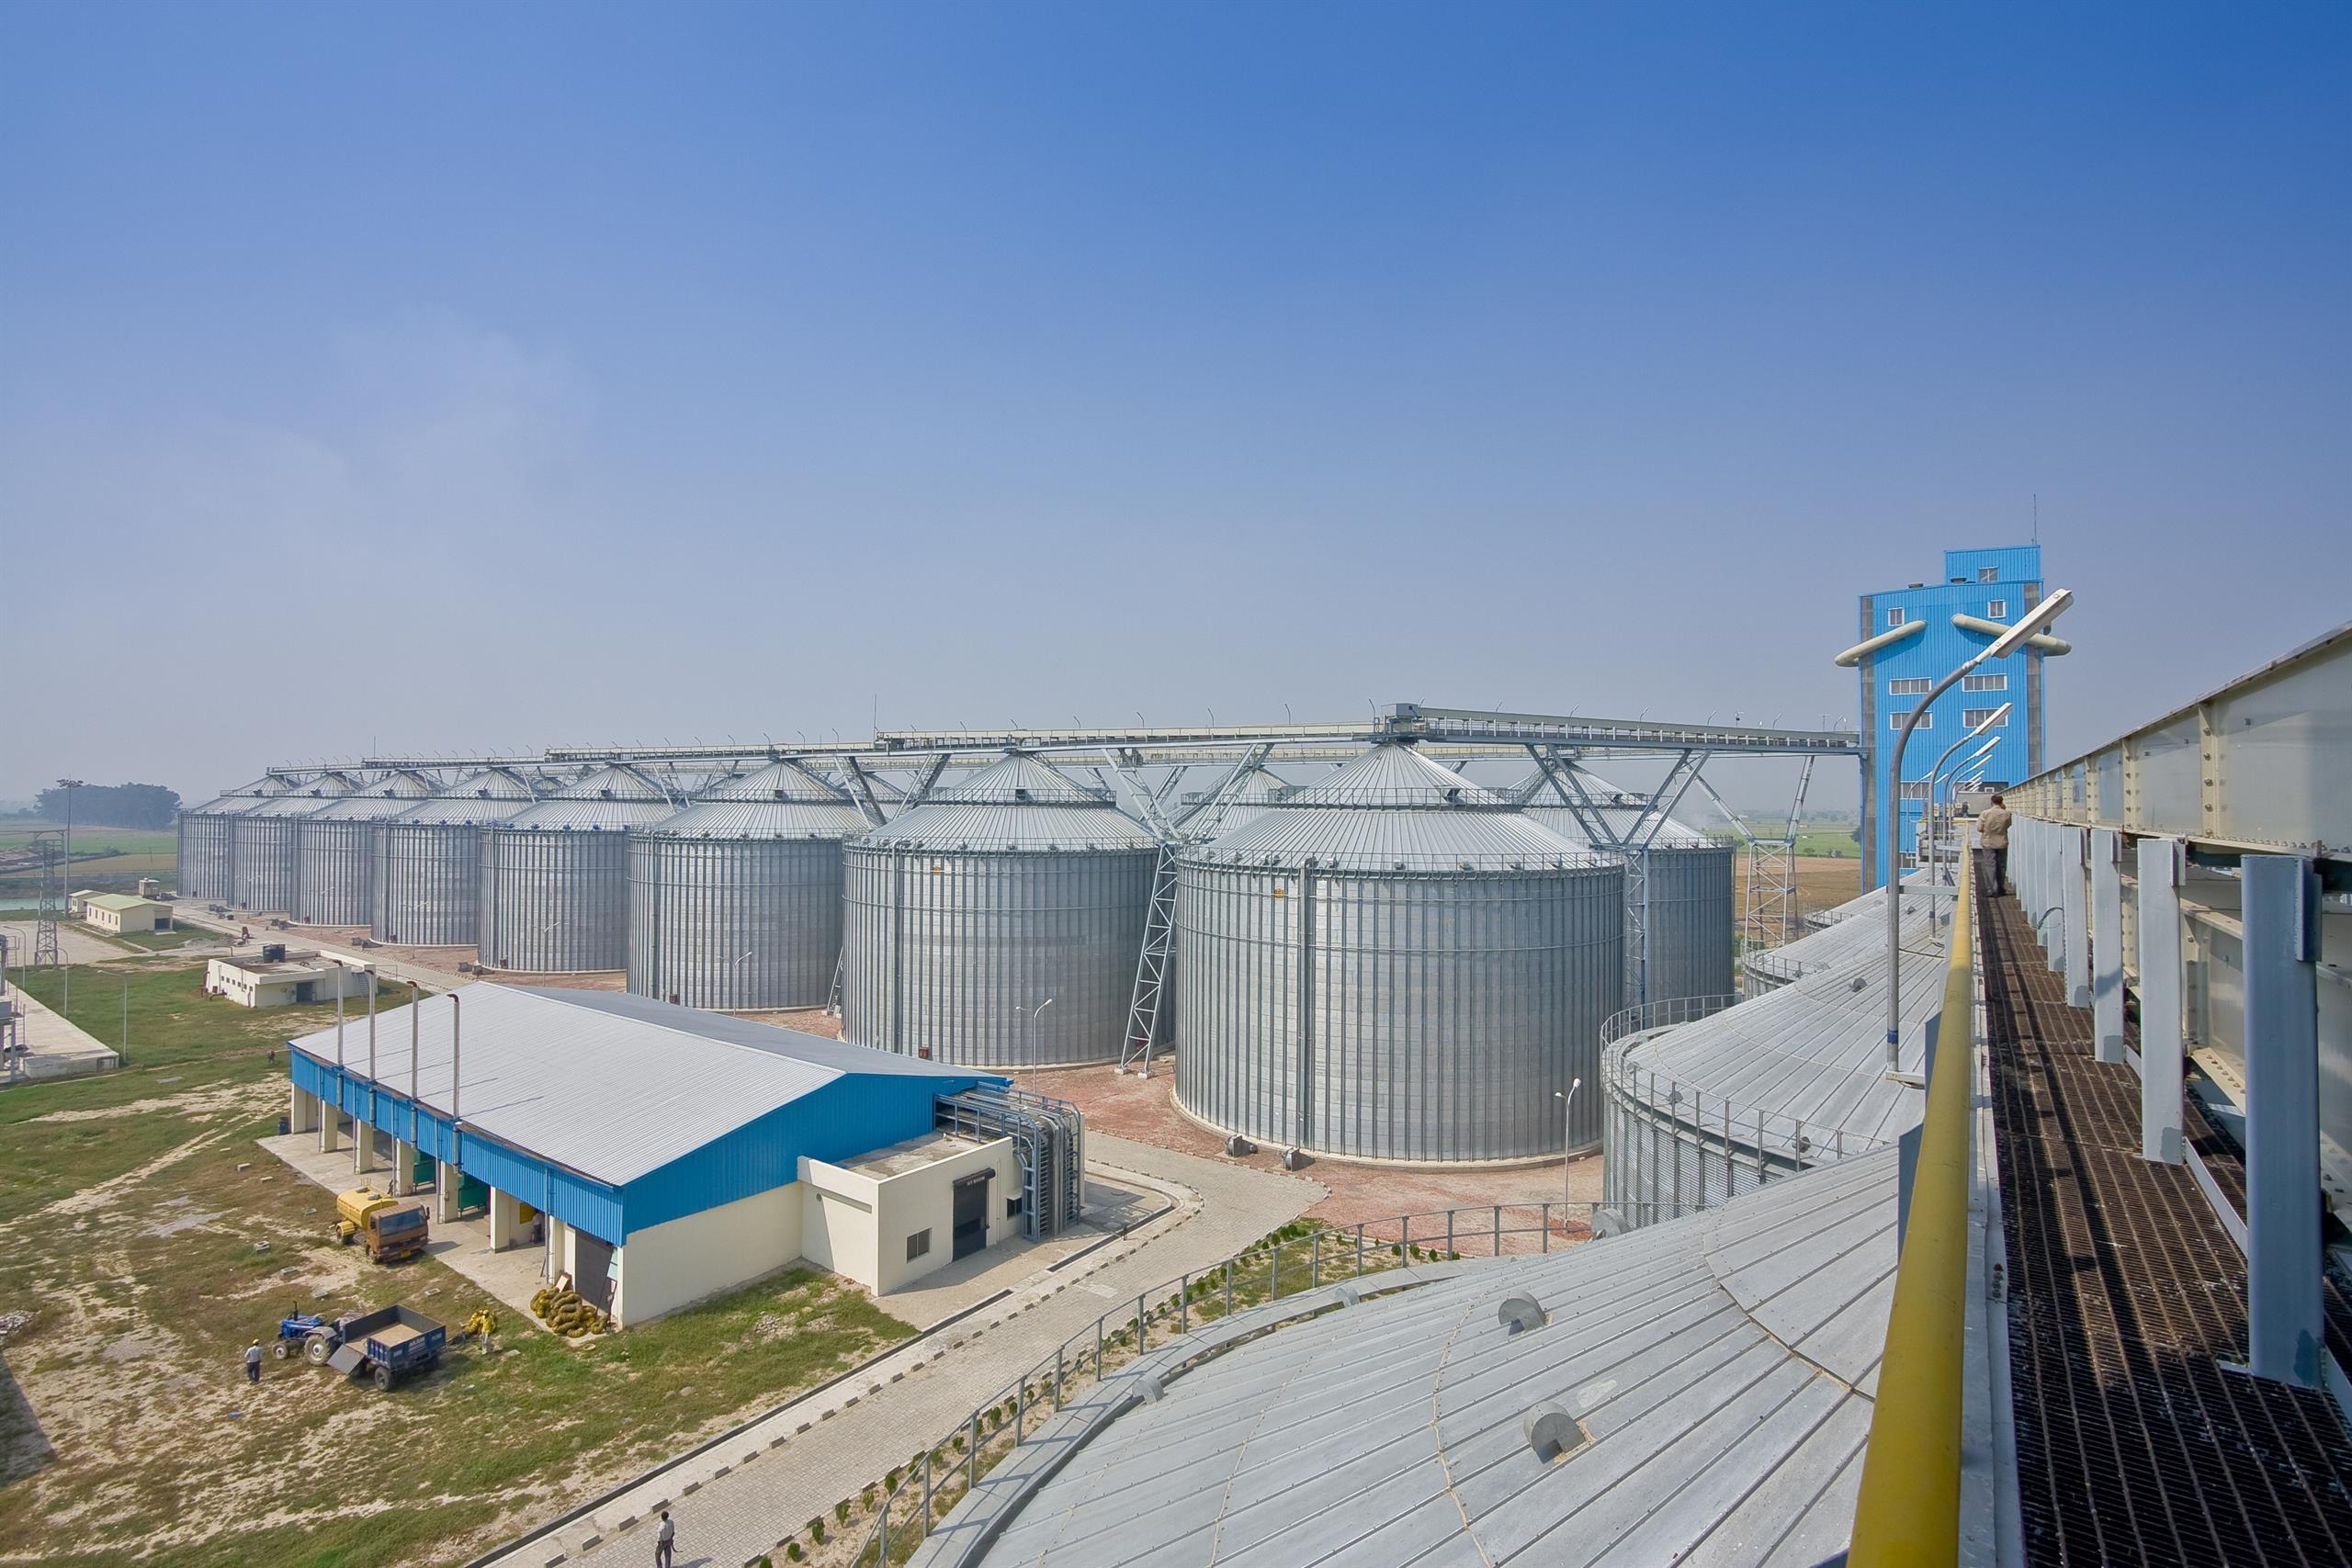 Grain silo facility, India